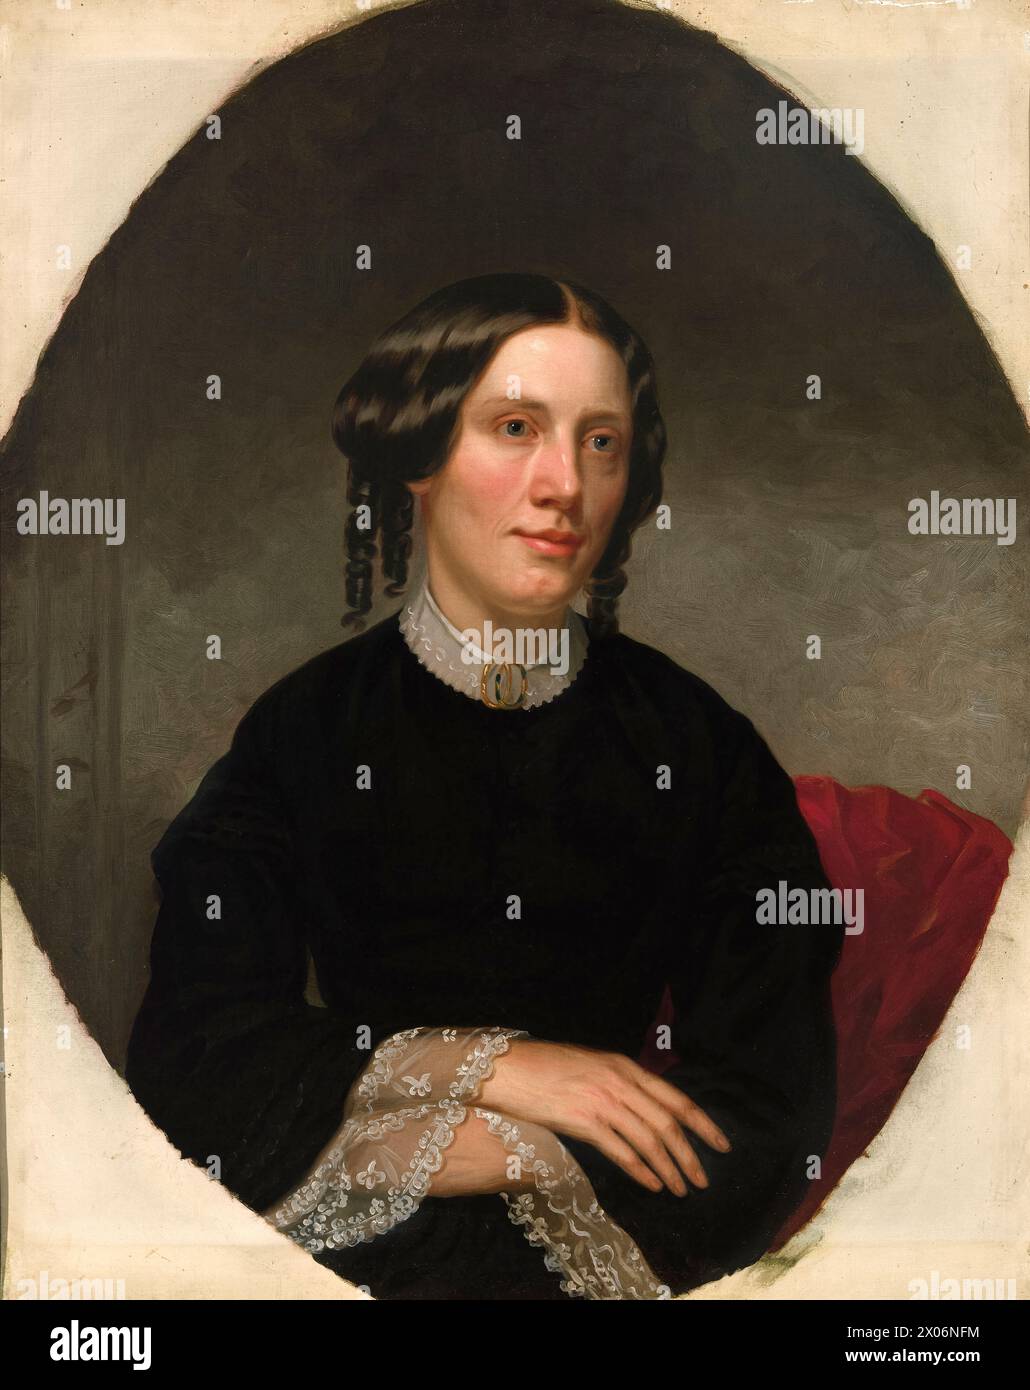 Ritratto di Harriet Beecher Stowe (1811-1896) dell'artista americano Alanson Fisher (1807-1884) dipinto nel 1853. Questo ritratto è stato commissionato un anno dopo la pubblicazione del romanzo più venduto di Stowe 'la capanna dello zio Tom' che ha fatto molto per progredire la causa abolizionista negli anni '1850 Foto Stock